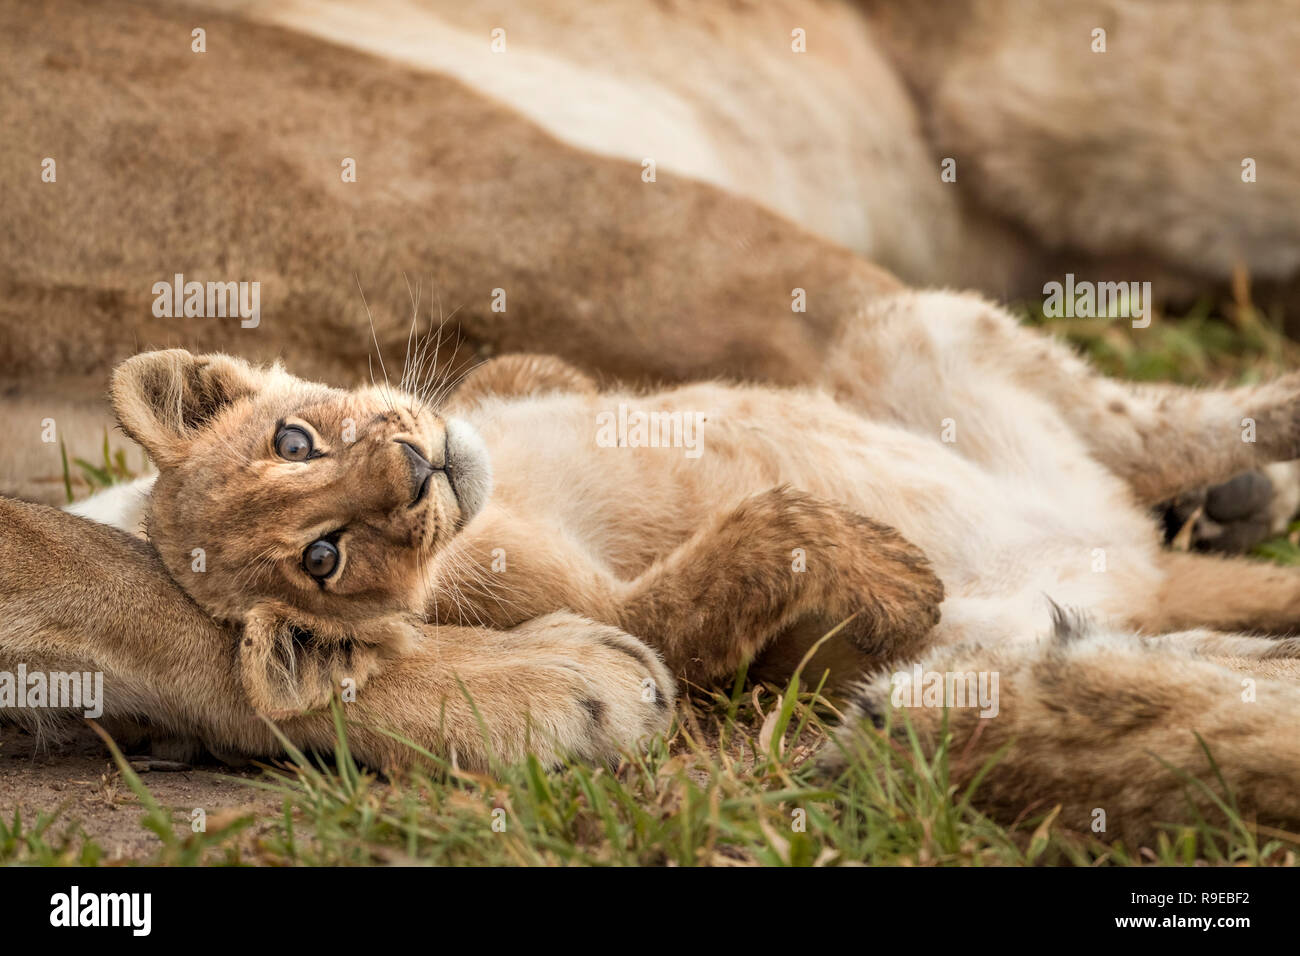 cute cucciolo di leone del bambino che giace fra i leoni sulla sua parte posteriore con zampe in su Foto Stock